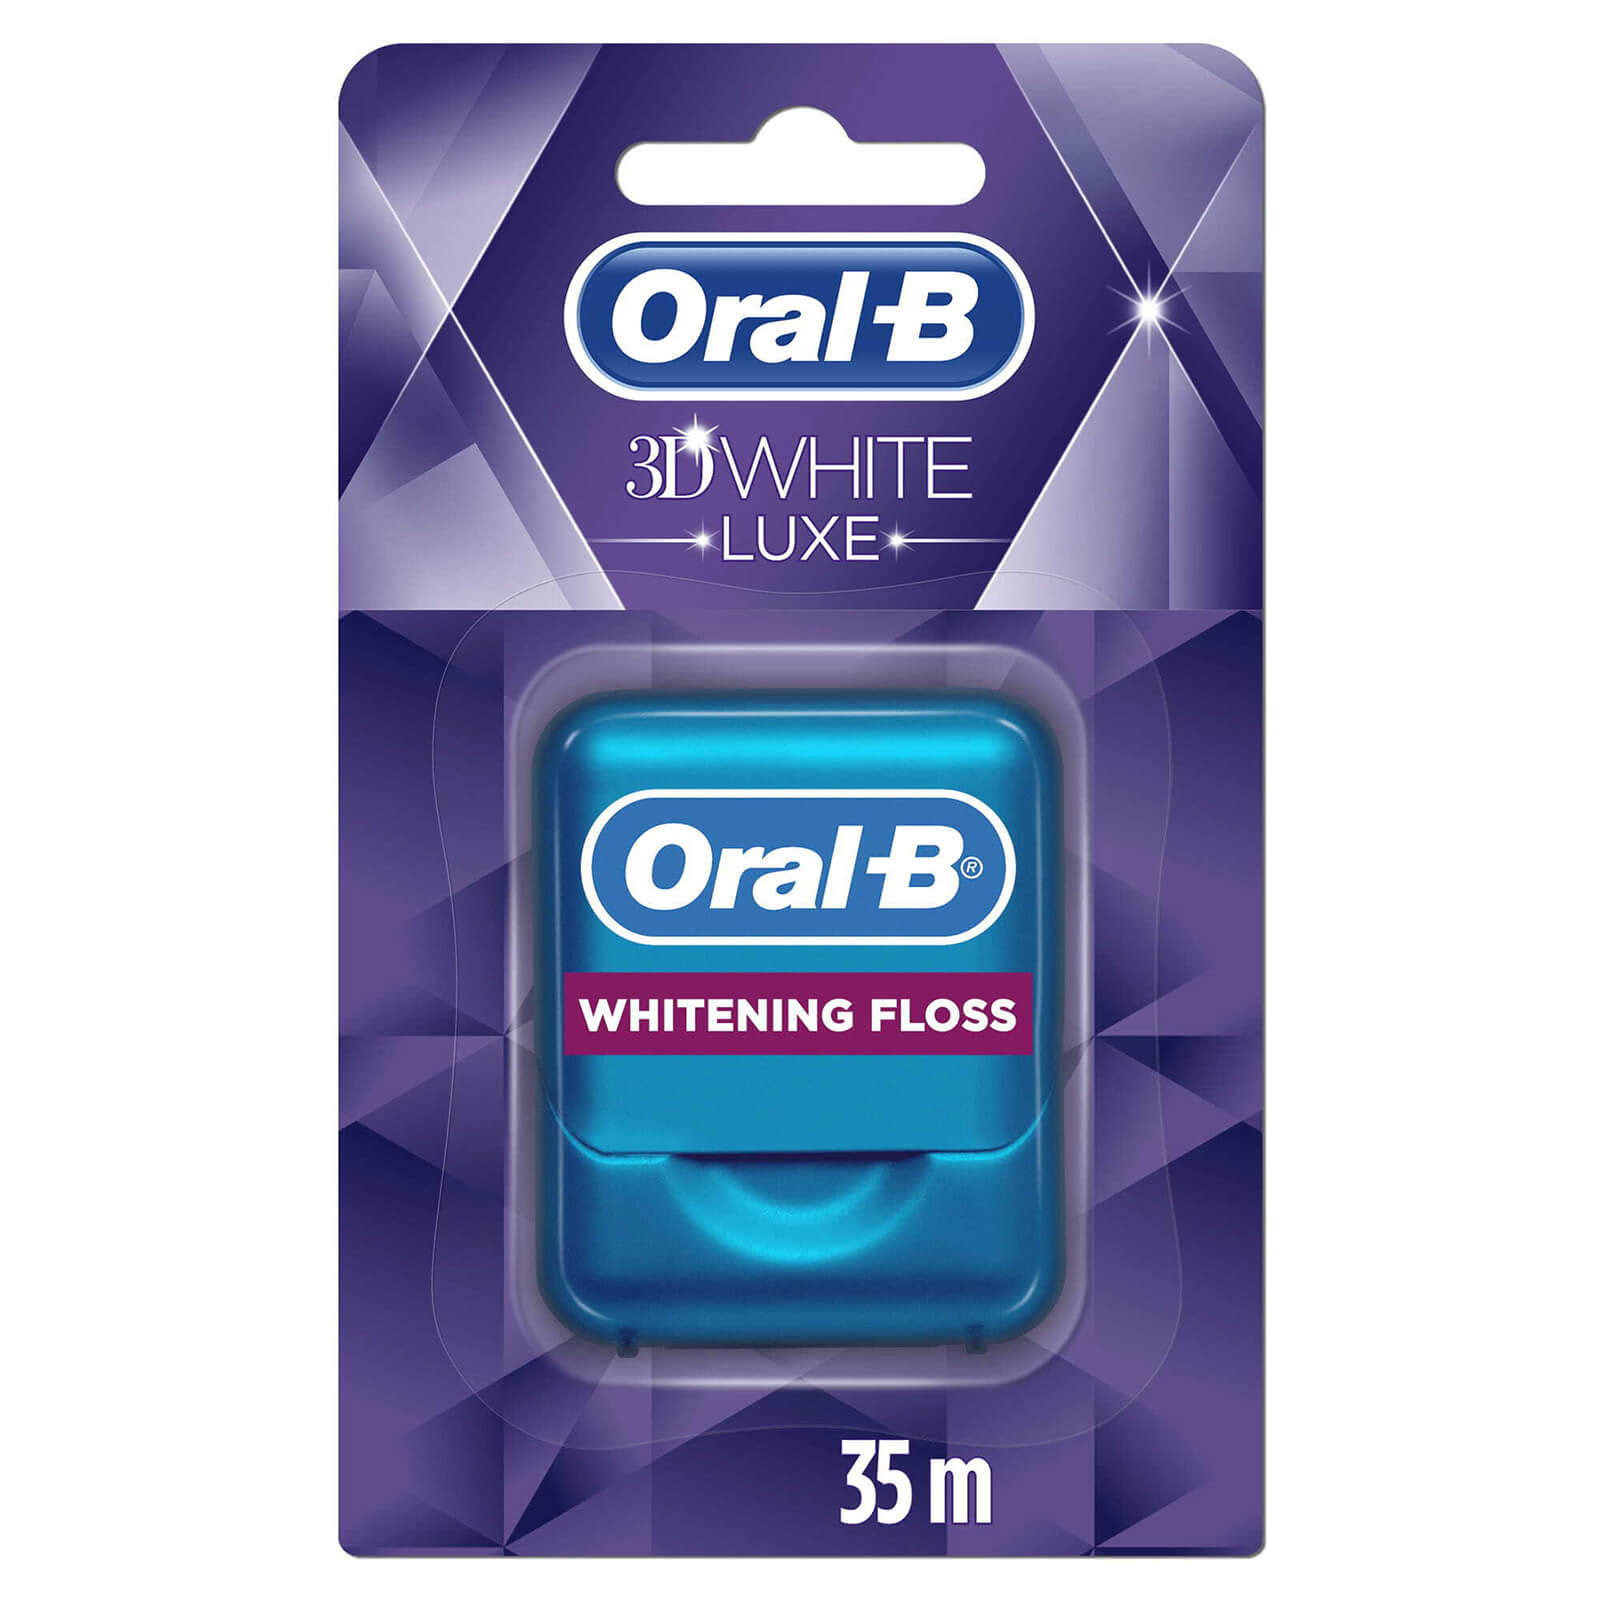 Oral B 3D White Luxe Whitening Dental Floss - 35m